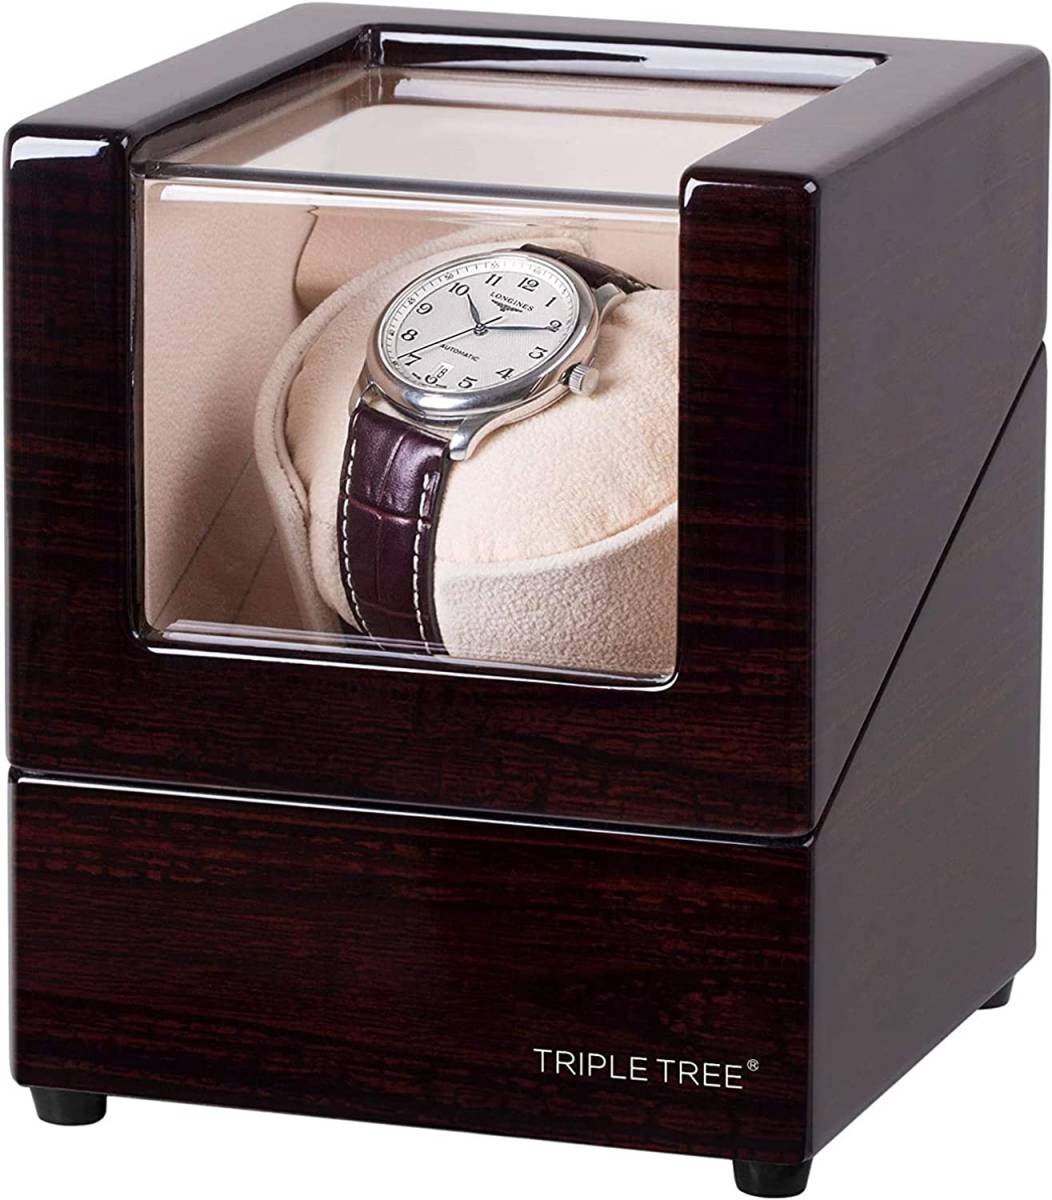  основной заводящее устройство наручные часы место хранения ke- Swatch Winder высокое качество самозаводящиеся часы 1 шт. интерьер высококлассный тихий звук модный дерево рама 